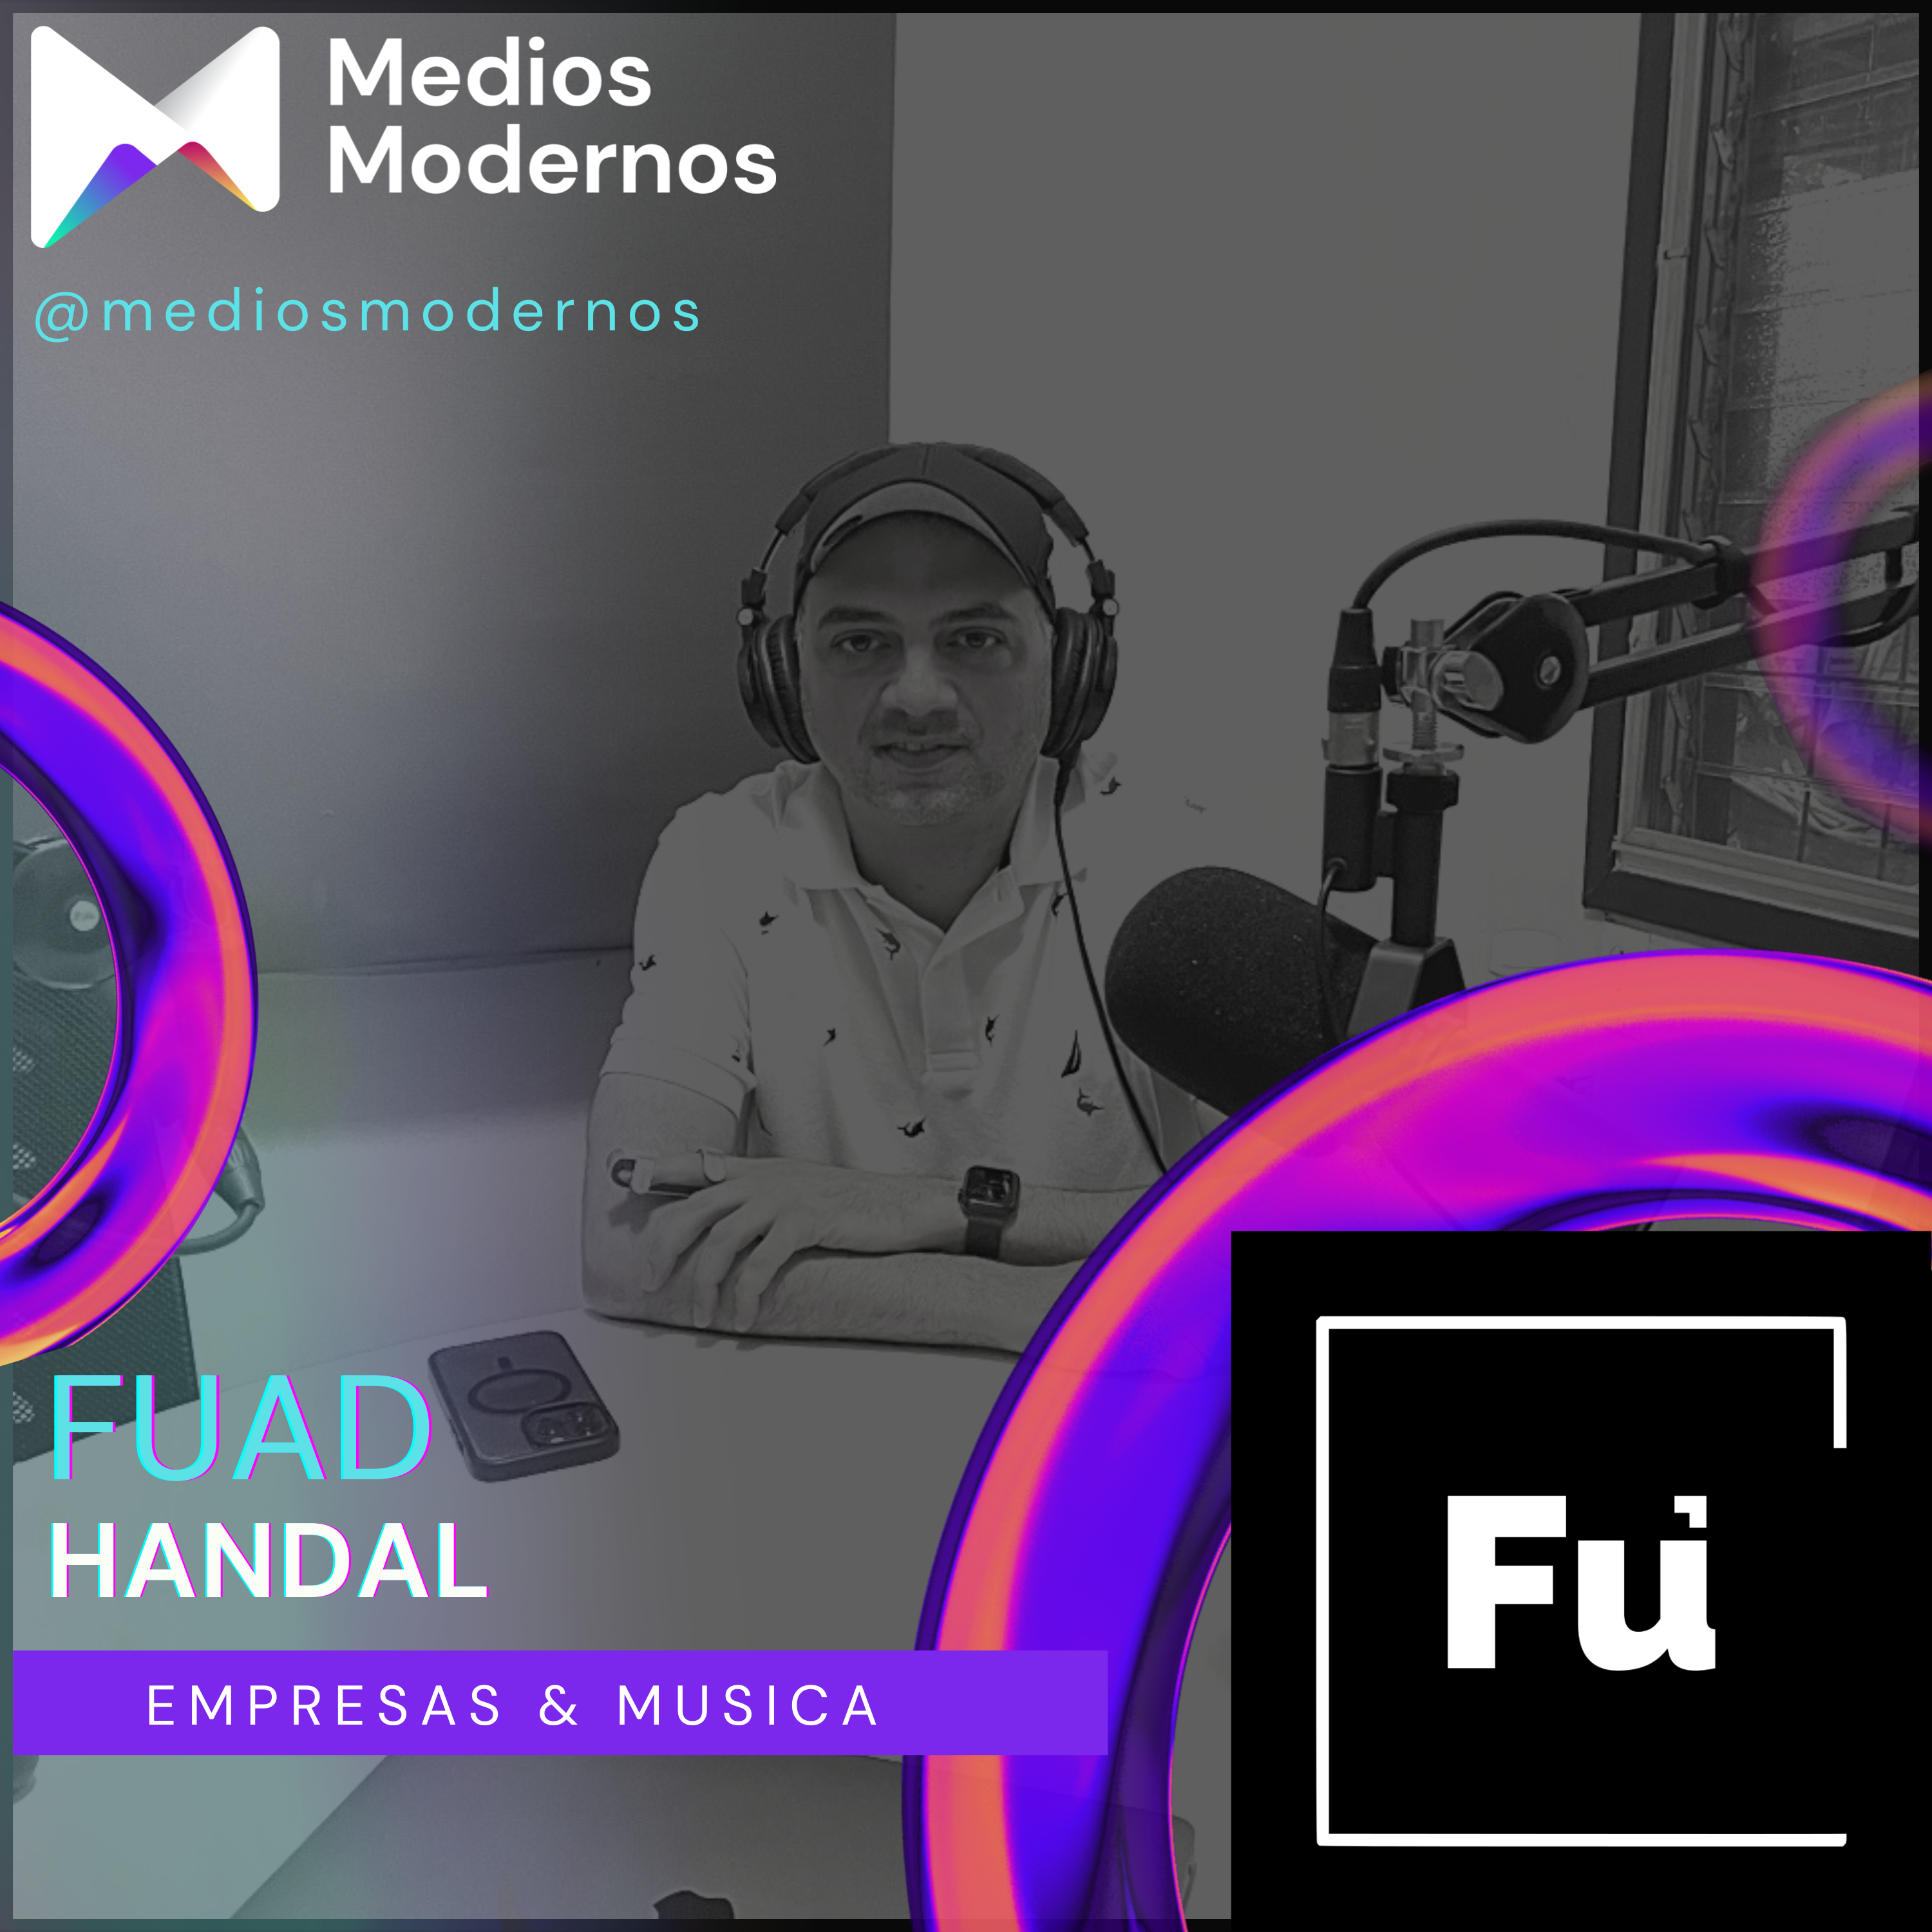 #51 Fuad Handal: Dirigiendo una multinacional, un estudio de música y la Asociación Nacional de Industriales de Honduras (ANDI).